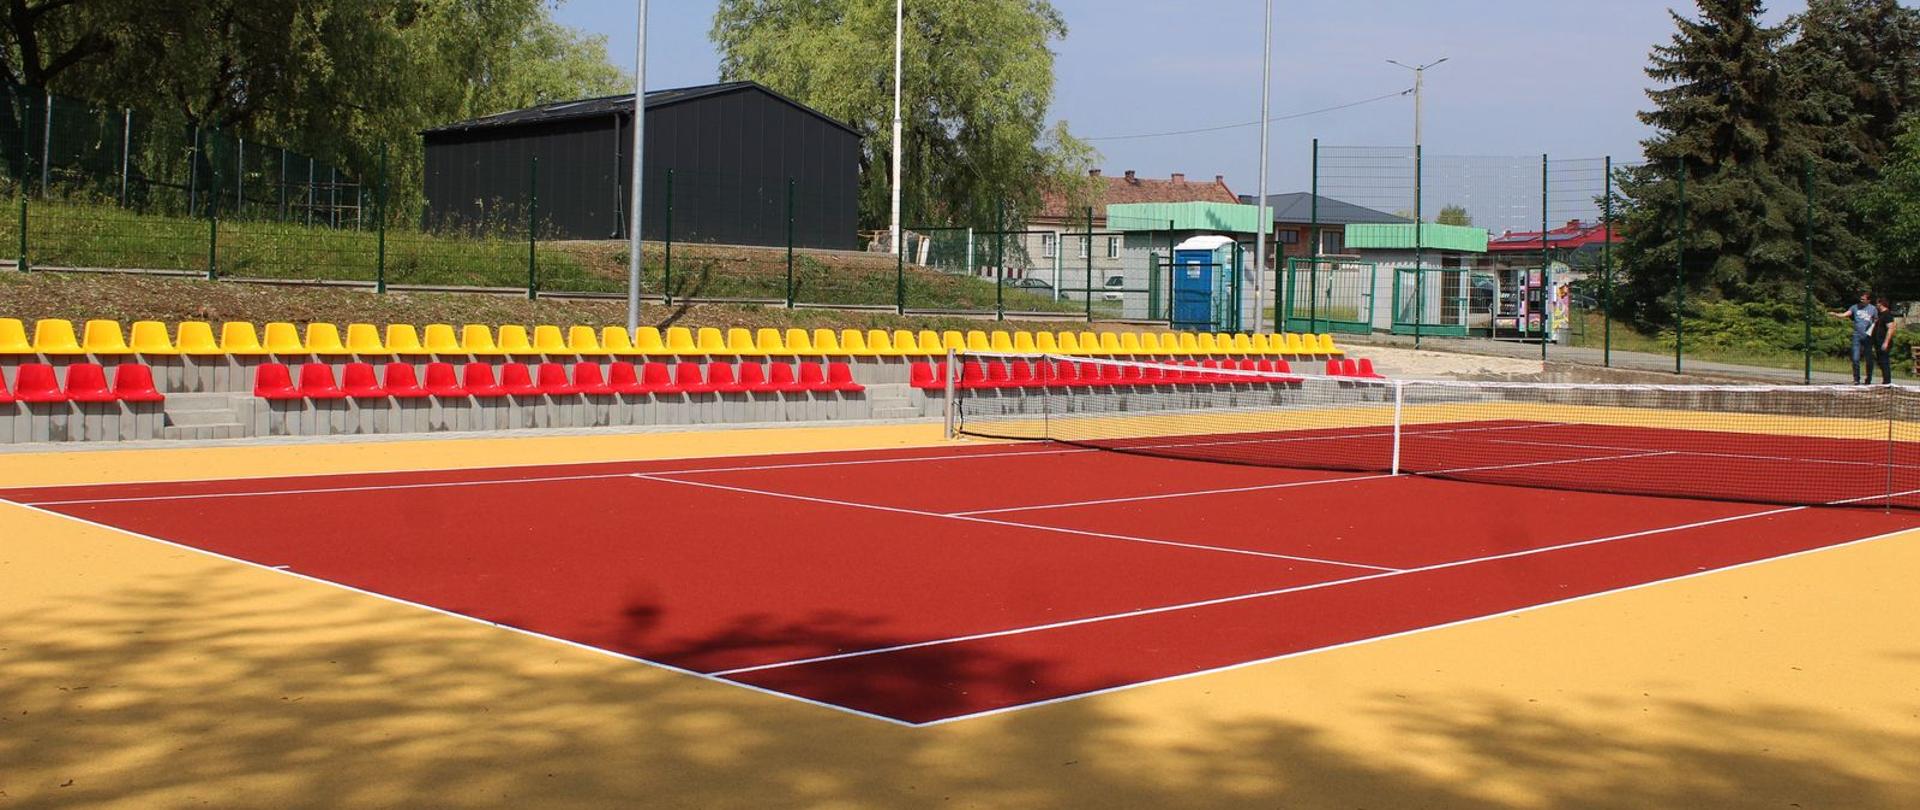 Na pierwszym planie kort tenisowy, w tle krzesełka zółto-czerwone.